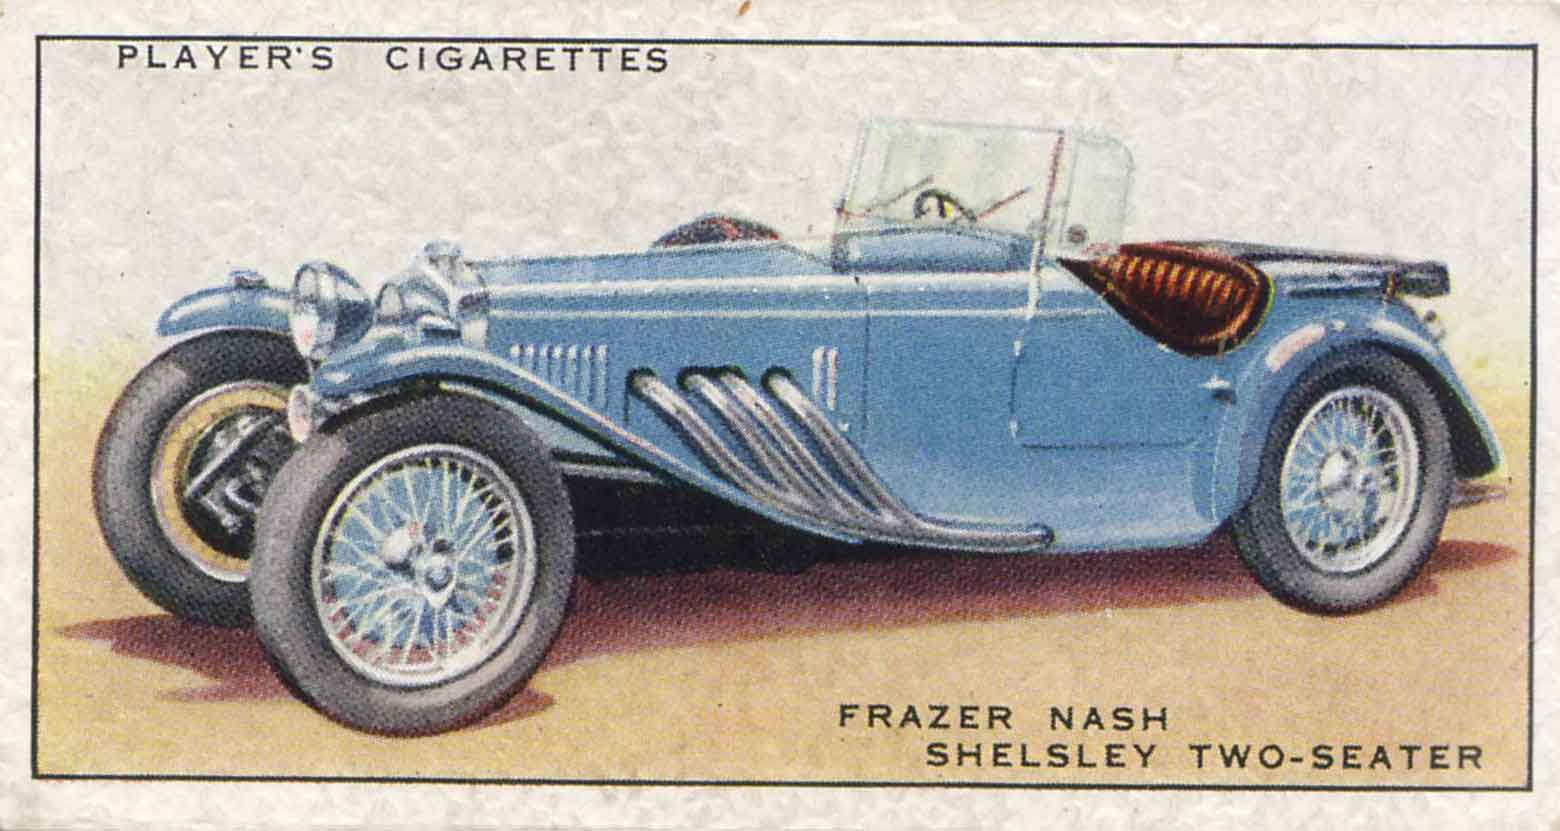 Frazer-Nash Shelsley. 1937 cigarette card.